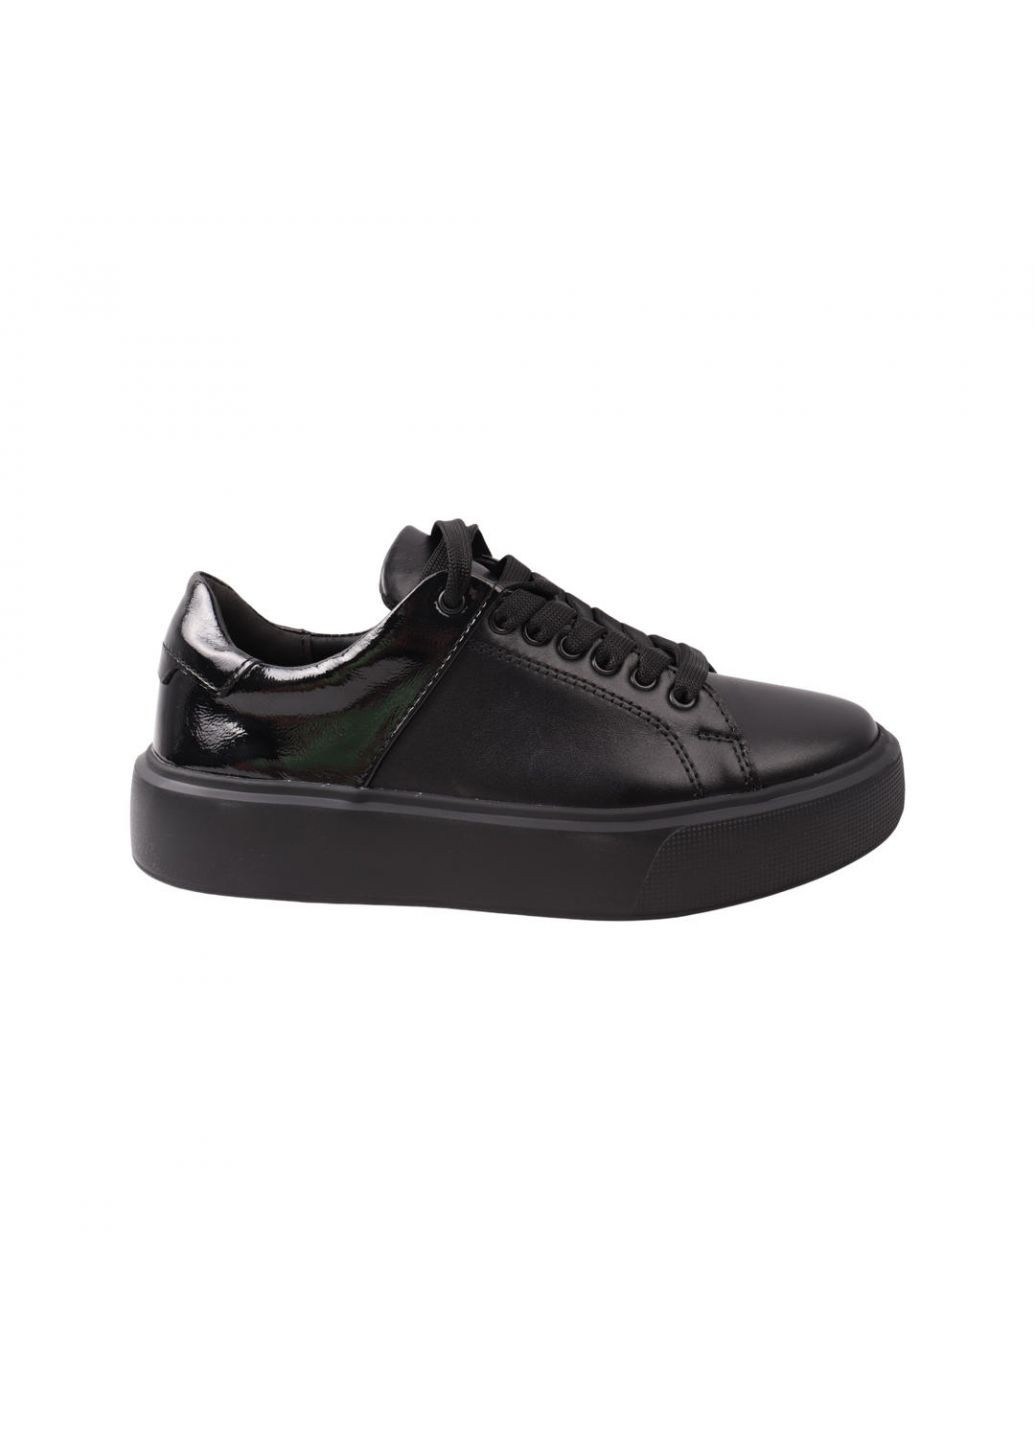 Черные кеды женские maxus черные натуральная кожа Maxus Shoes 78-21DTC